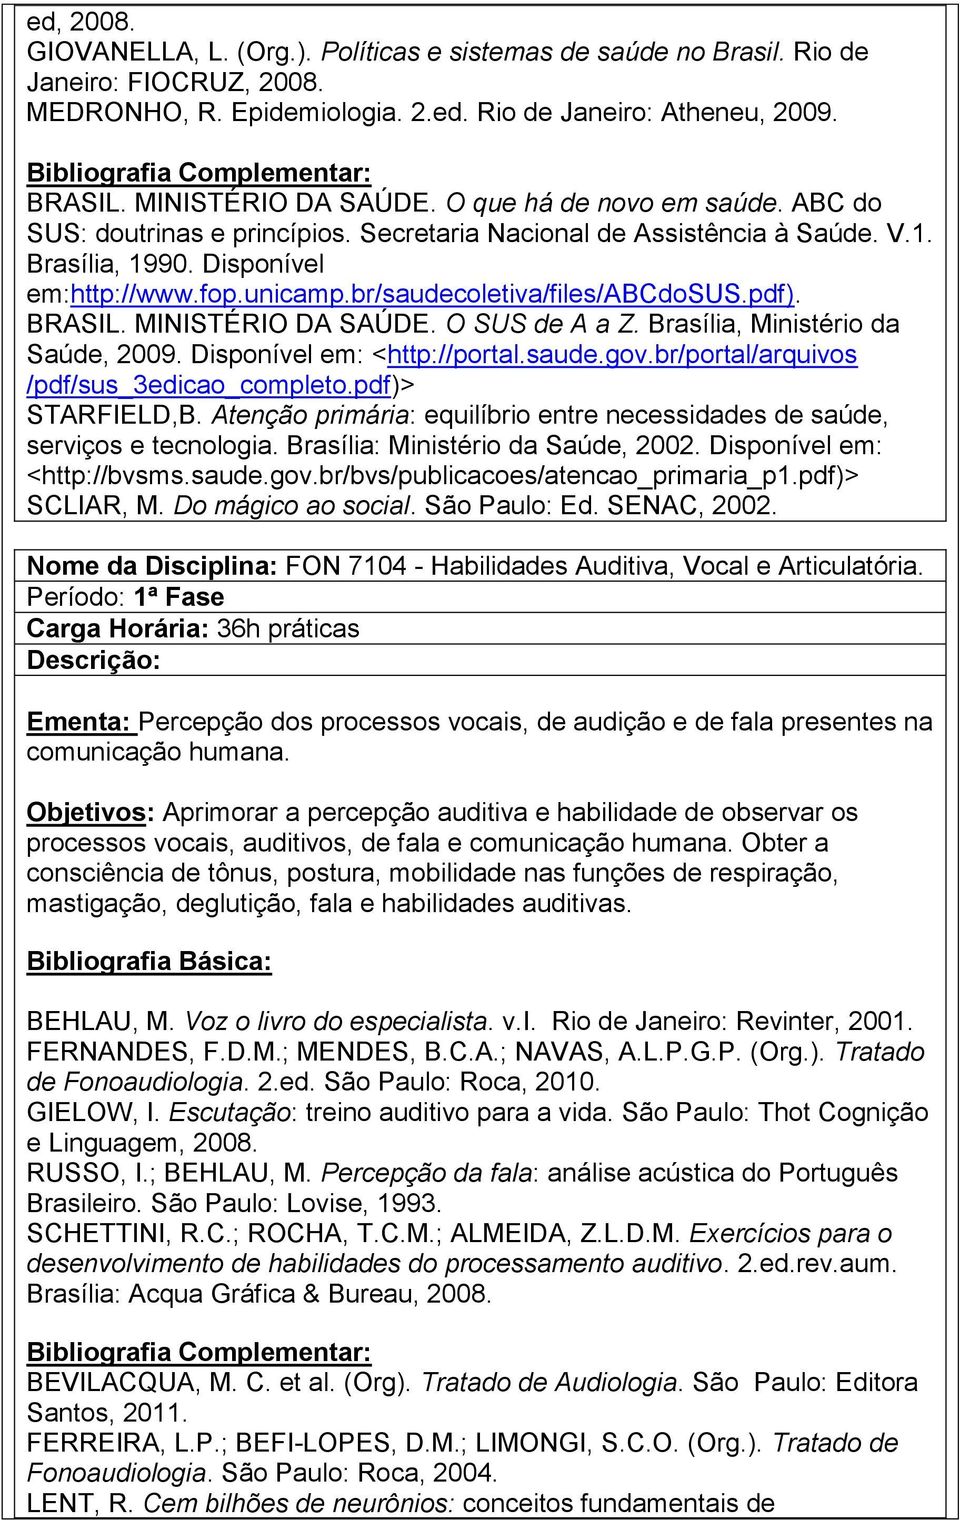 pdf). BRASIL. MINISTÉRIO DA SAÚDE. O SUS de A a Z. Brasília, Ministério da Saúde, 2009. Disponível em: <http://portal.saude.gov.br/portal/arquivos /pdf/sus_3edicao_completo.pdf)> STARFIELD,B.